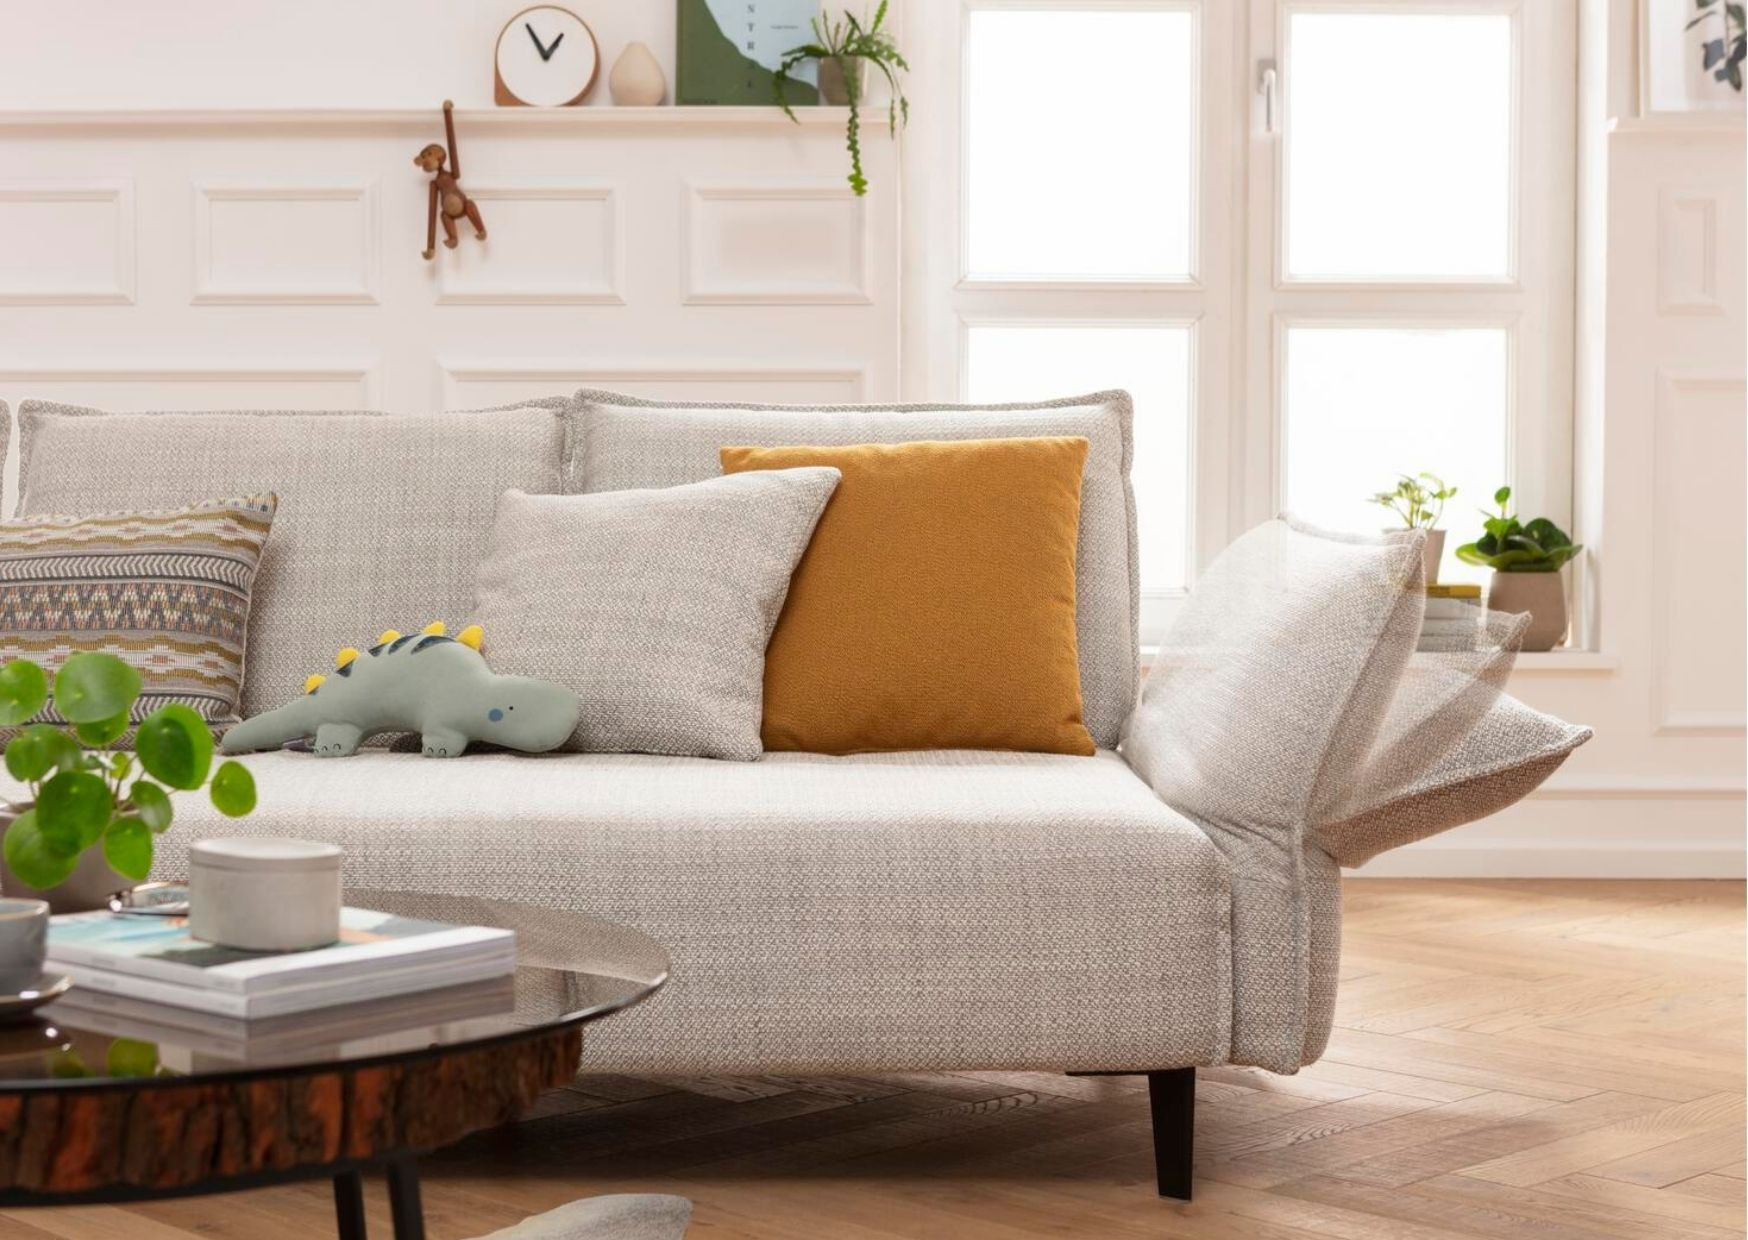 Kleines Wohnzimmer Einrichten » Möbel-Ideen Für Kleine Räume! inside Couch Für Kleines Wohnzimmer